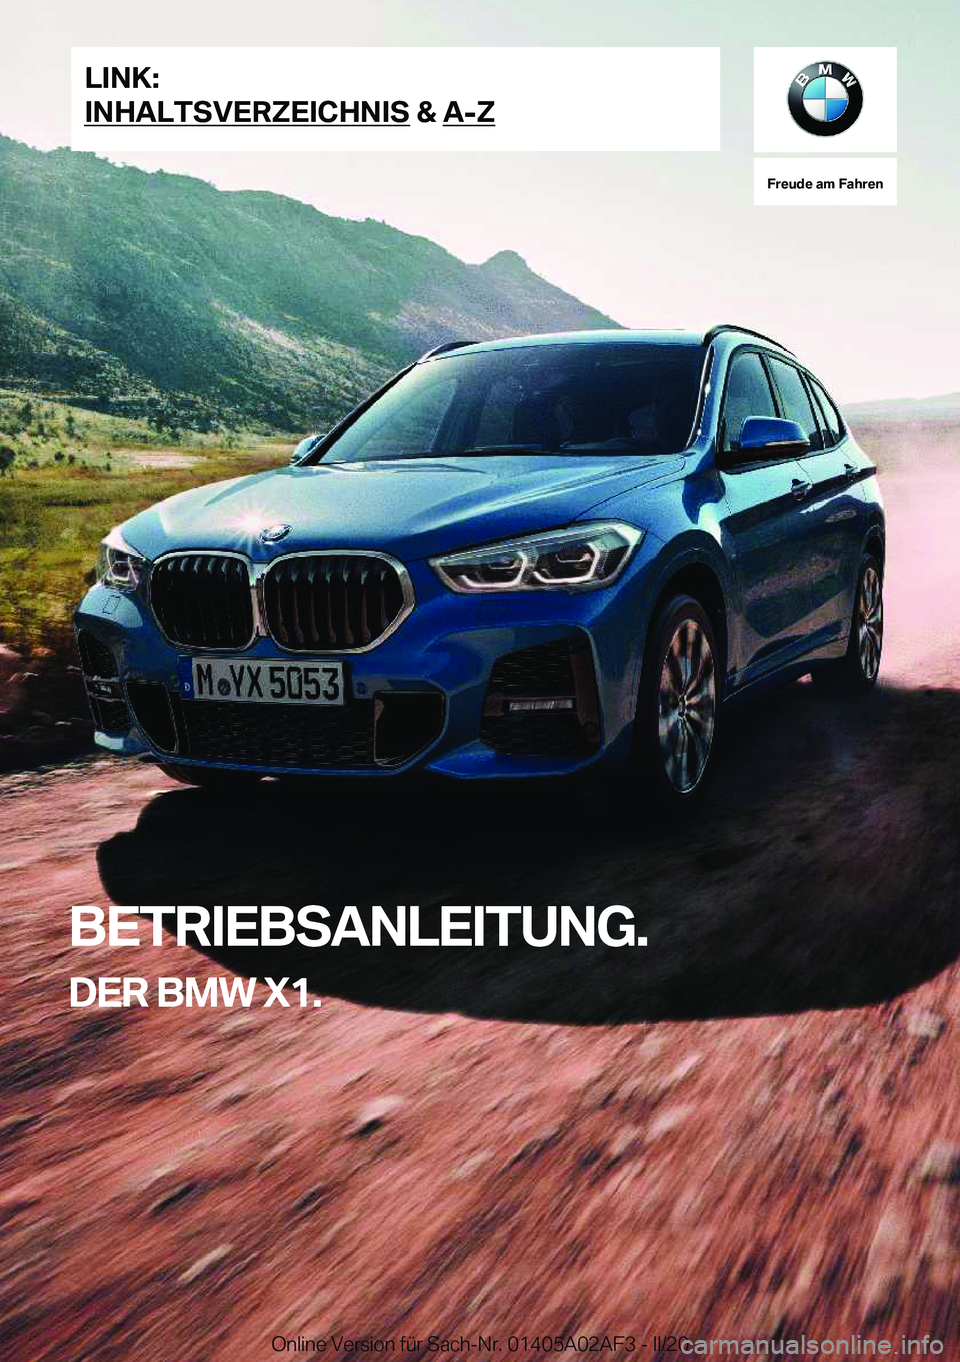 BMW X1 2020  Betriebsanleitungen (in German) �F�r�e�u�d�e��a�m��F�a�h�r�e�n
�B�E�T�R�I�E�B�S�A�N�L�E�I�T�U�N�G�.�D�E�R��B�M�W��X�1�.�L�I�N�K�:
�I�N�H�A�L�T�S�V�E�R�Z�E�I�C�H�N�I�S��&��A�-�Z�O�n�l�i�n�e��V�e�r�s�i�o�n��f�